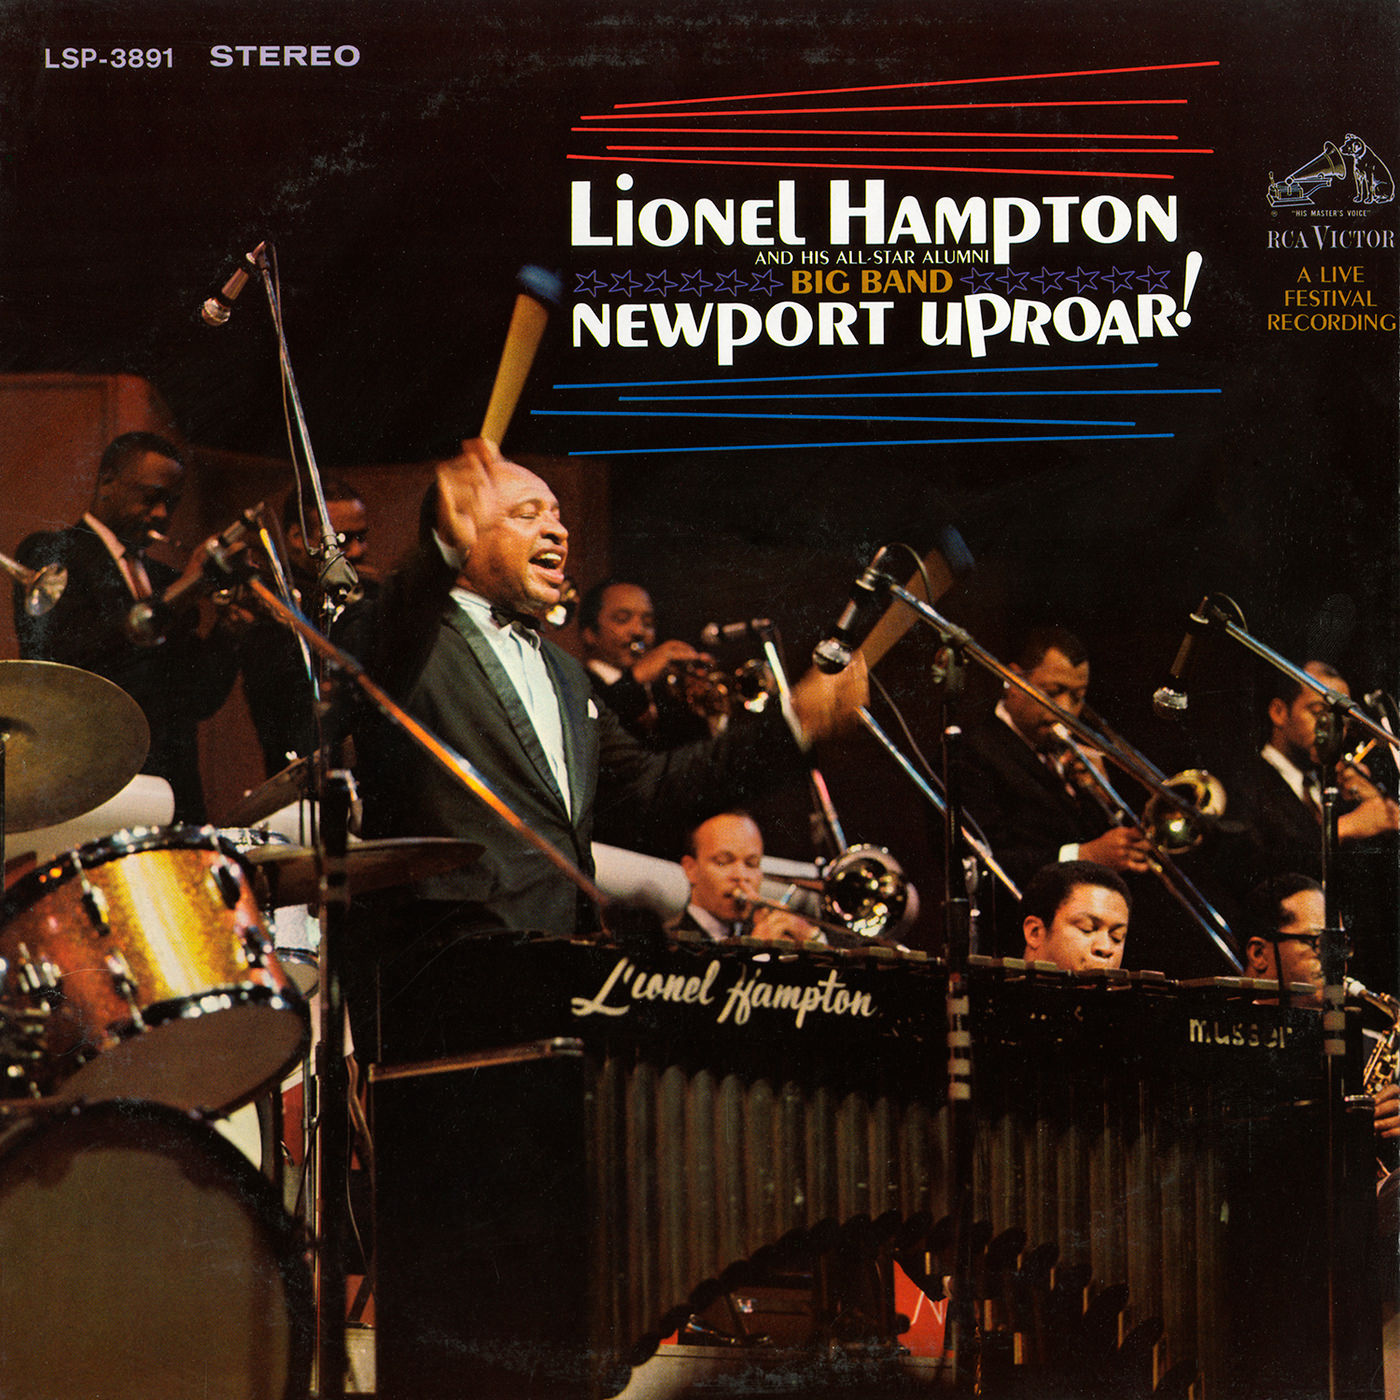 Lionel Hampton & His All-Star Alumni Big Band – Newport Uproar (1968/2017) [AcousticSounds FLAC 24bit/192kHz]